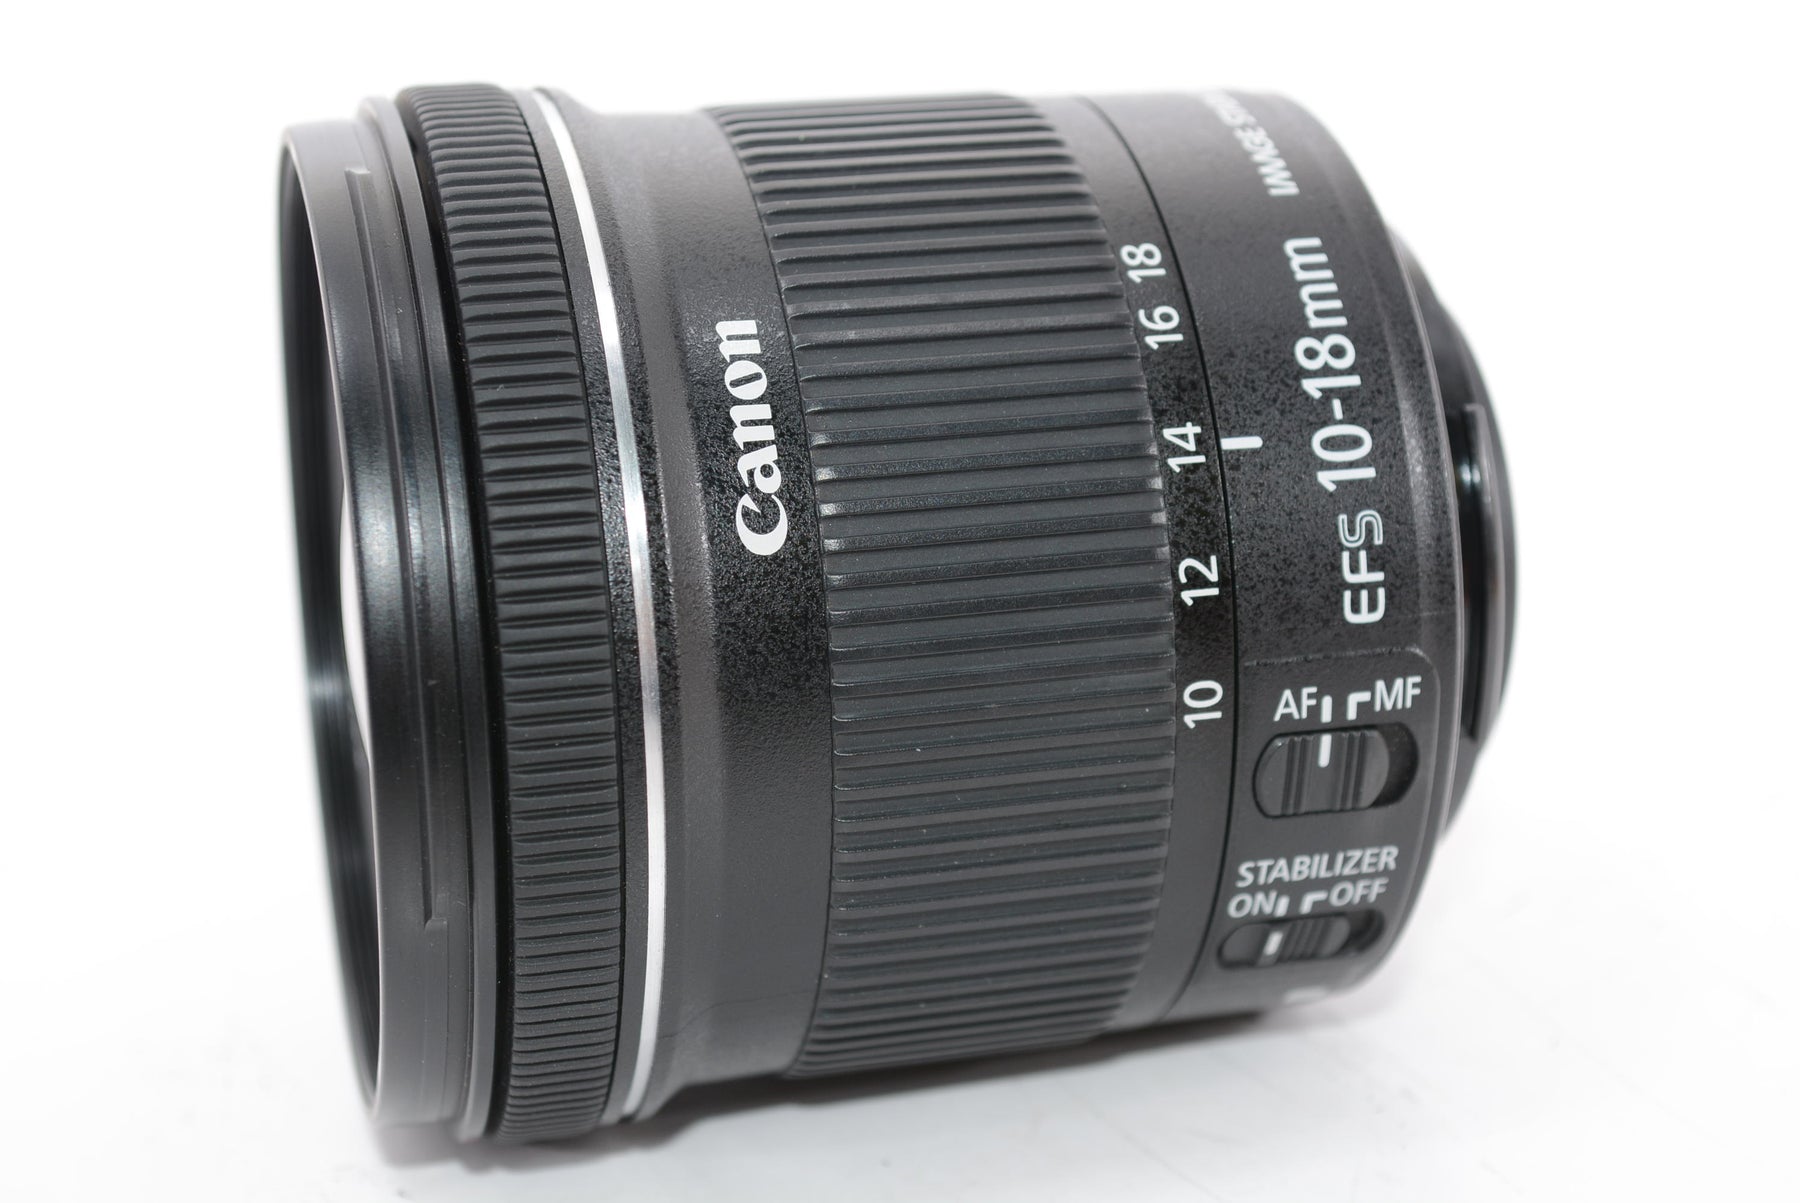 【外観特上級】Canon 超広角ズームレンズ EF-S10-18mm F4.5-5.6 IS STM